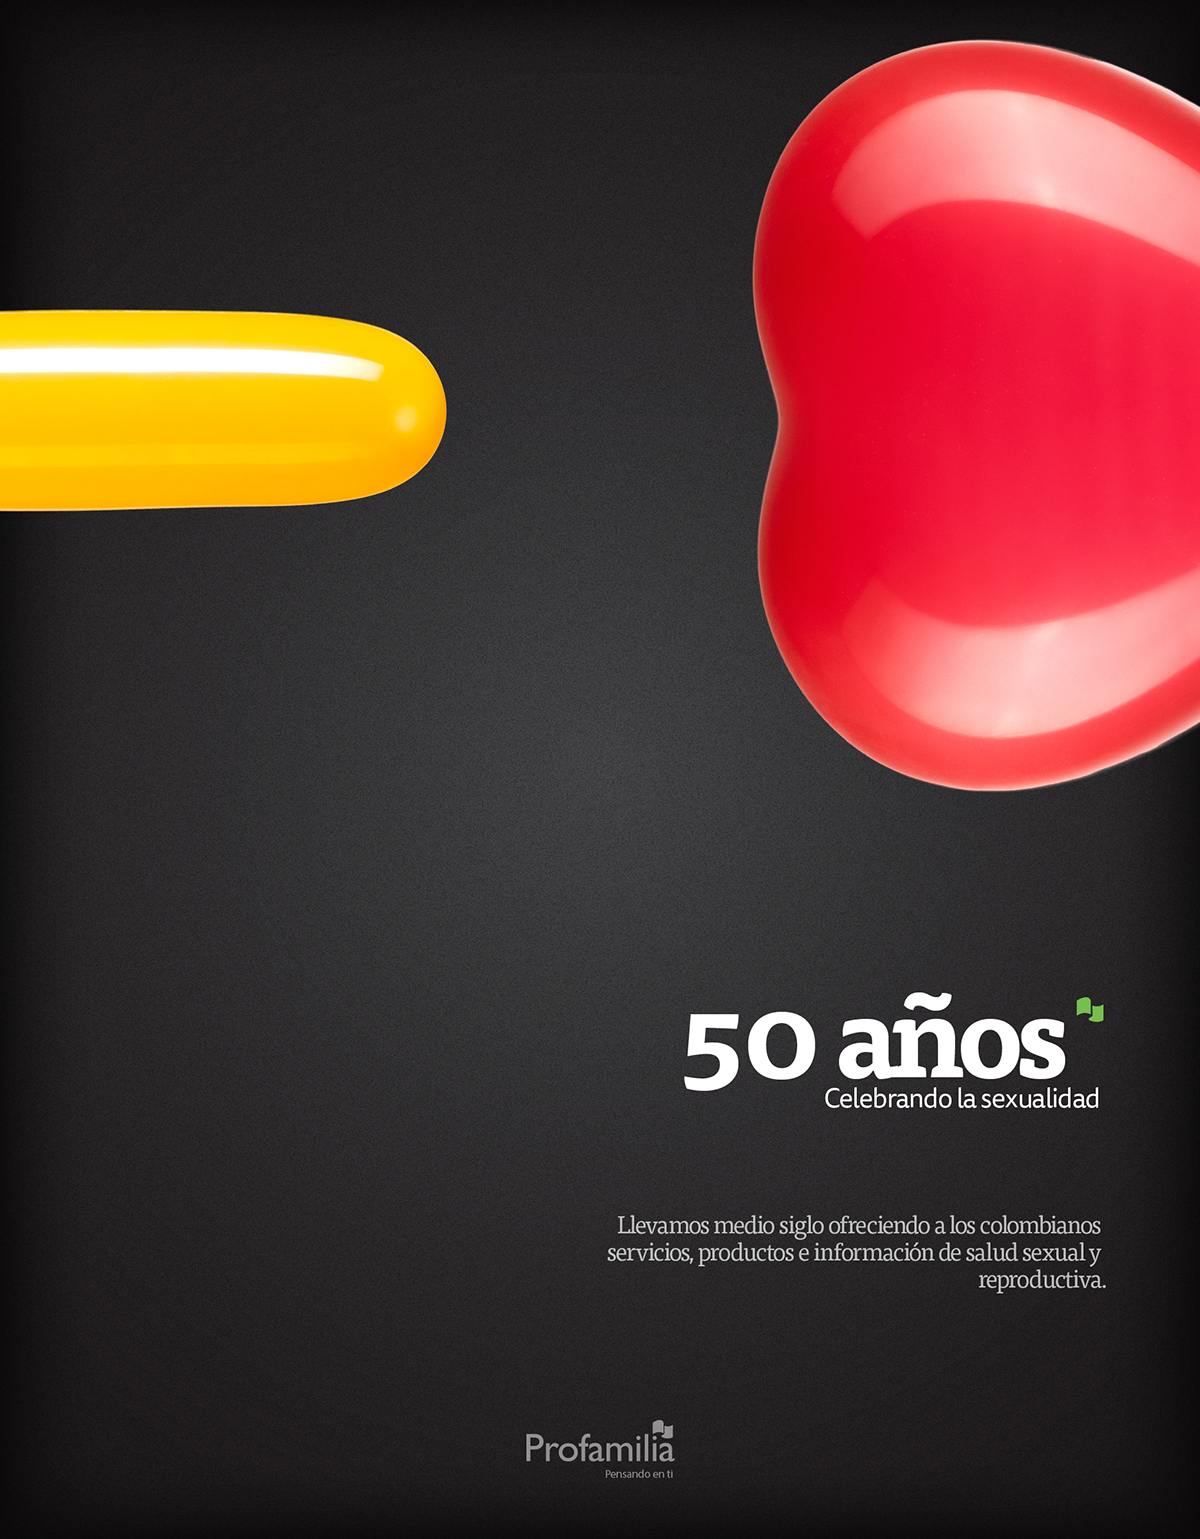 Creativity balloons concepto profamilia Campaña 50 anos responsabilidad social copy ads Awards